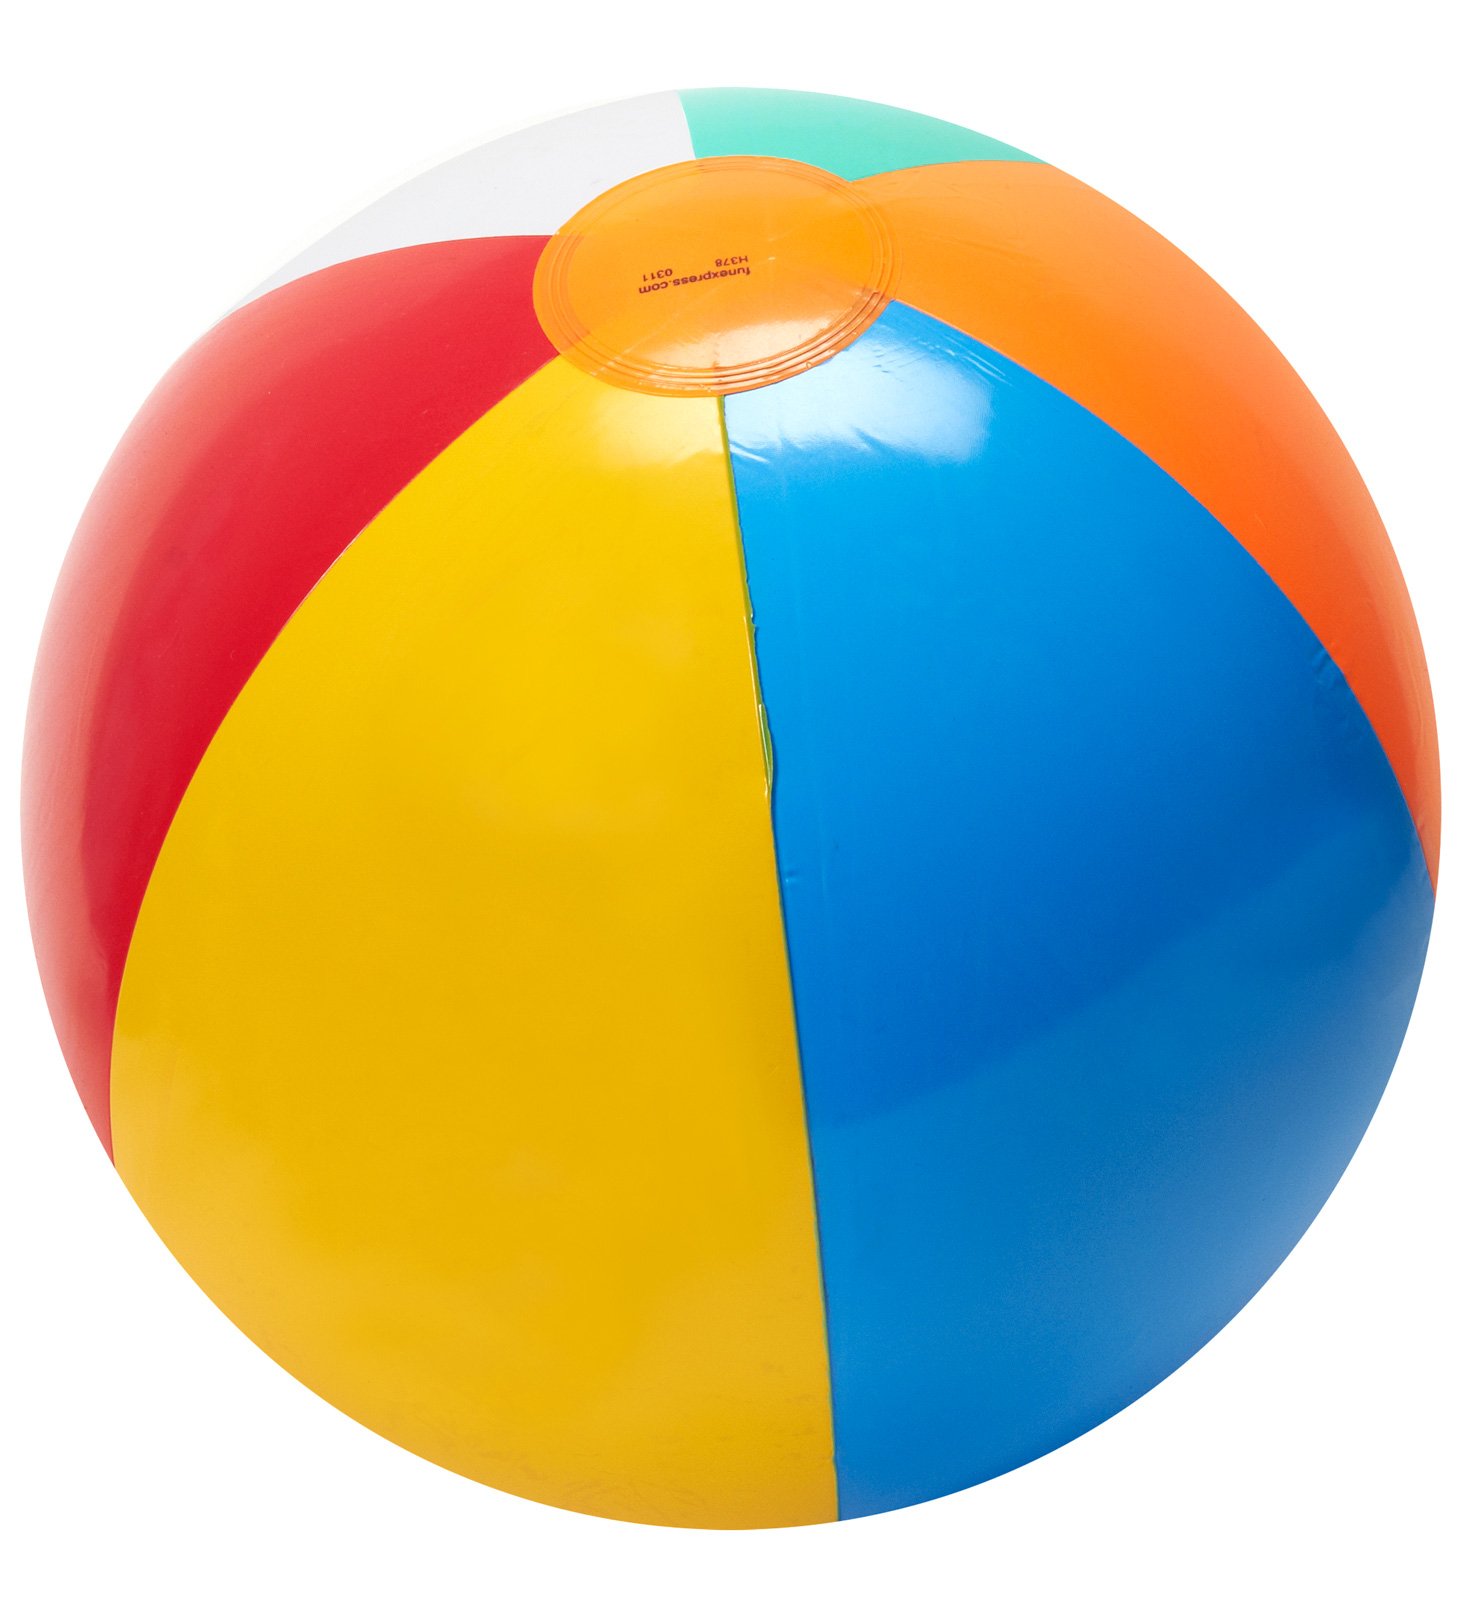 free clip art of beach ball - photo #37